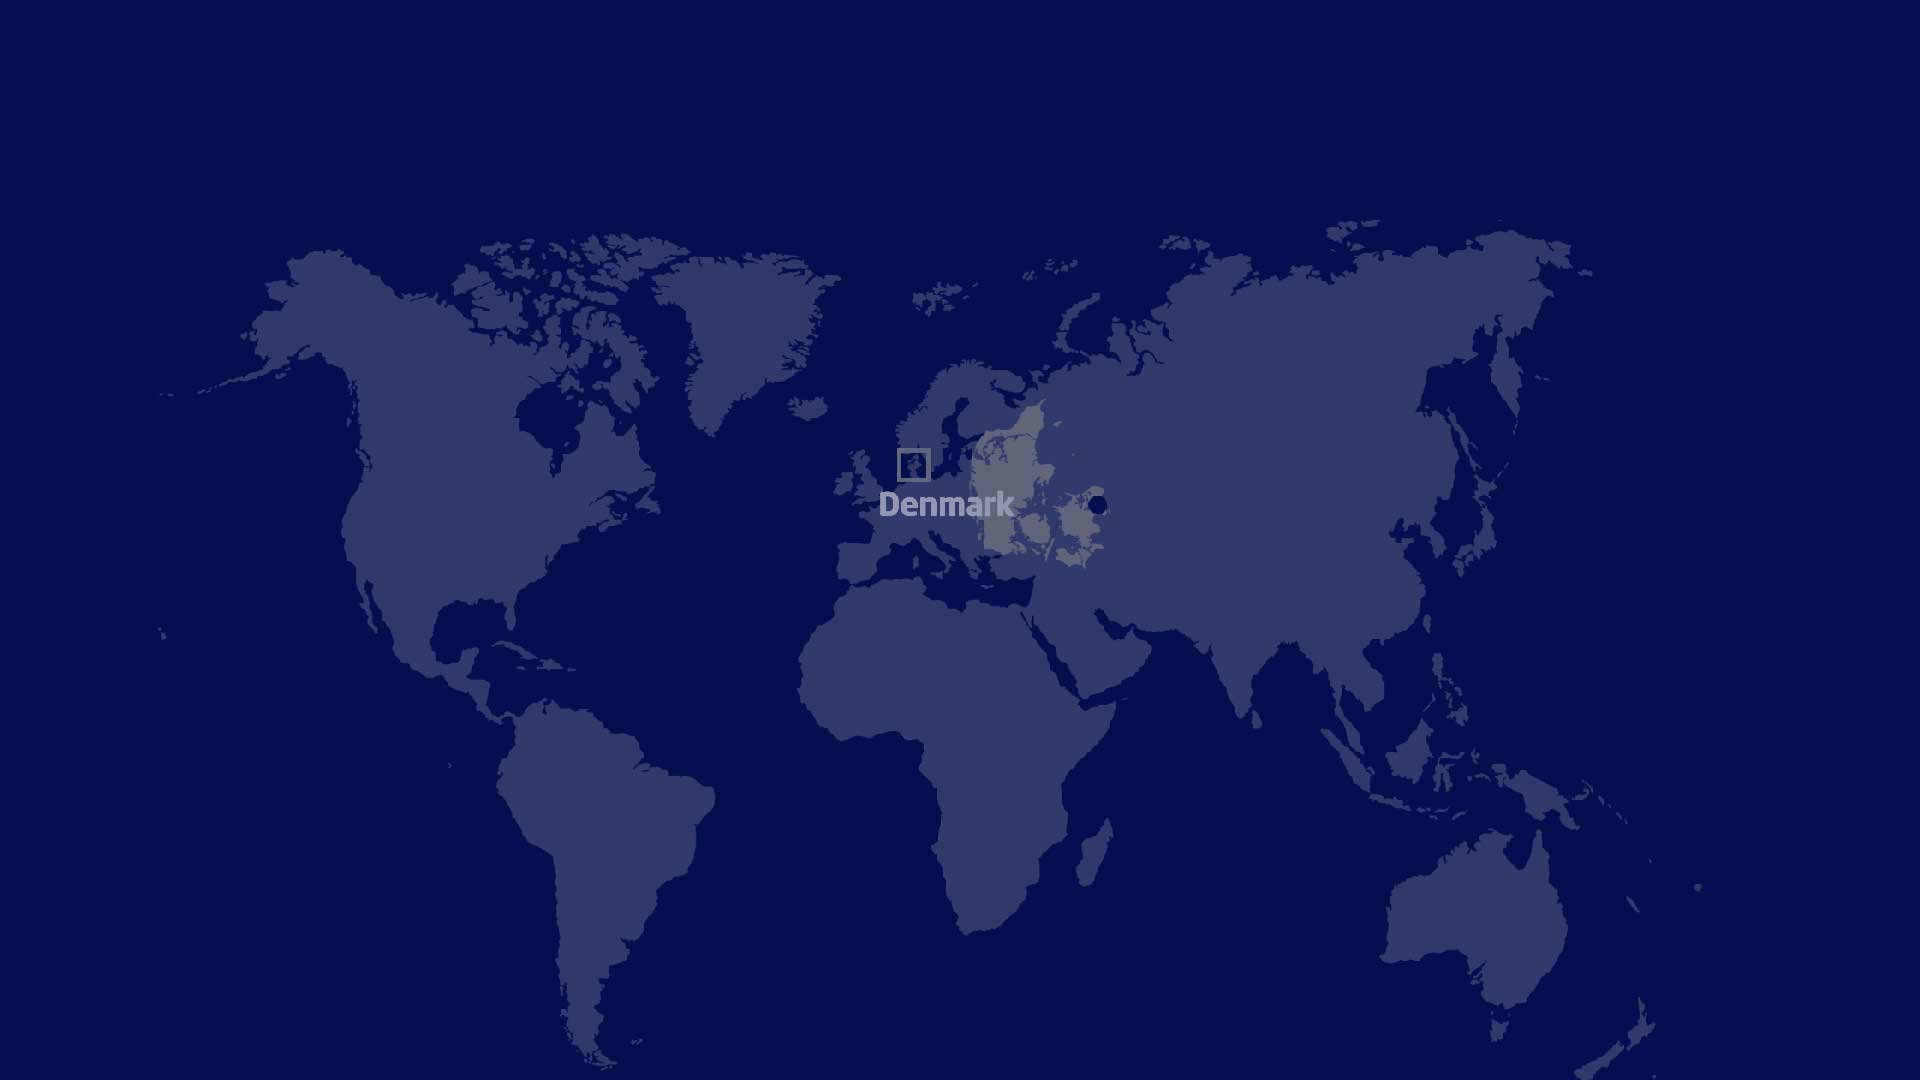 Denmark on a world map